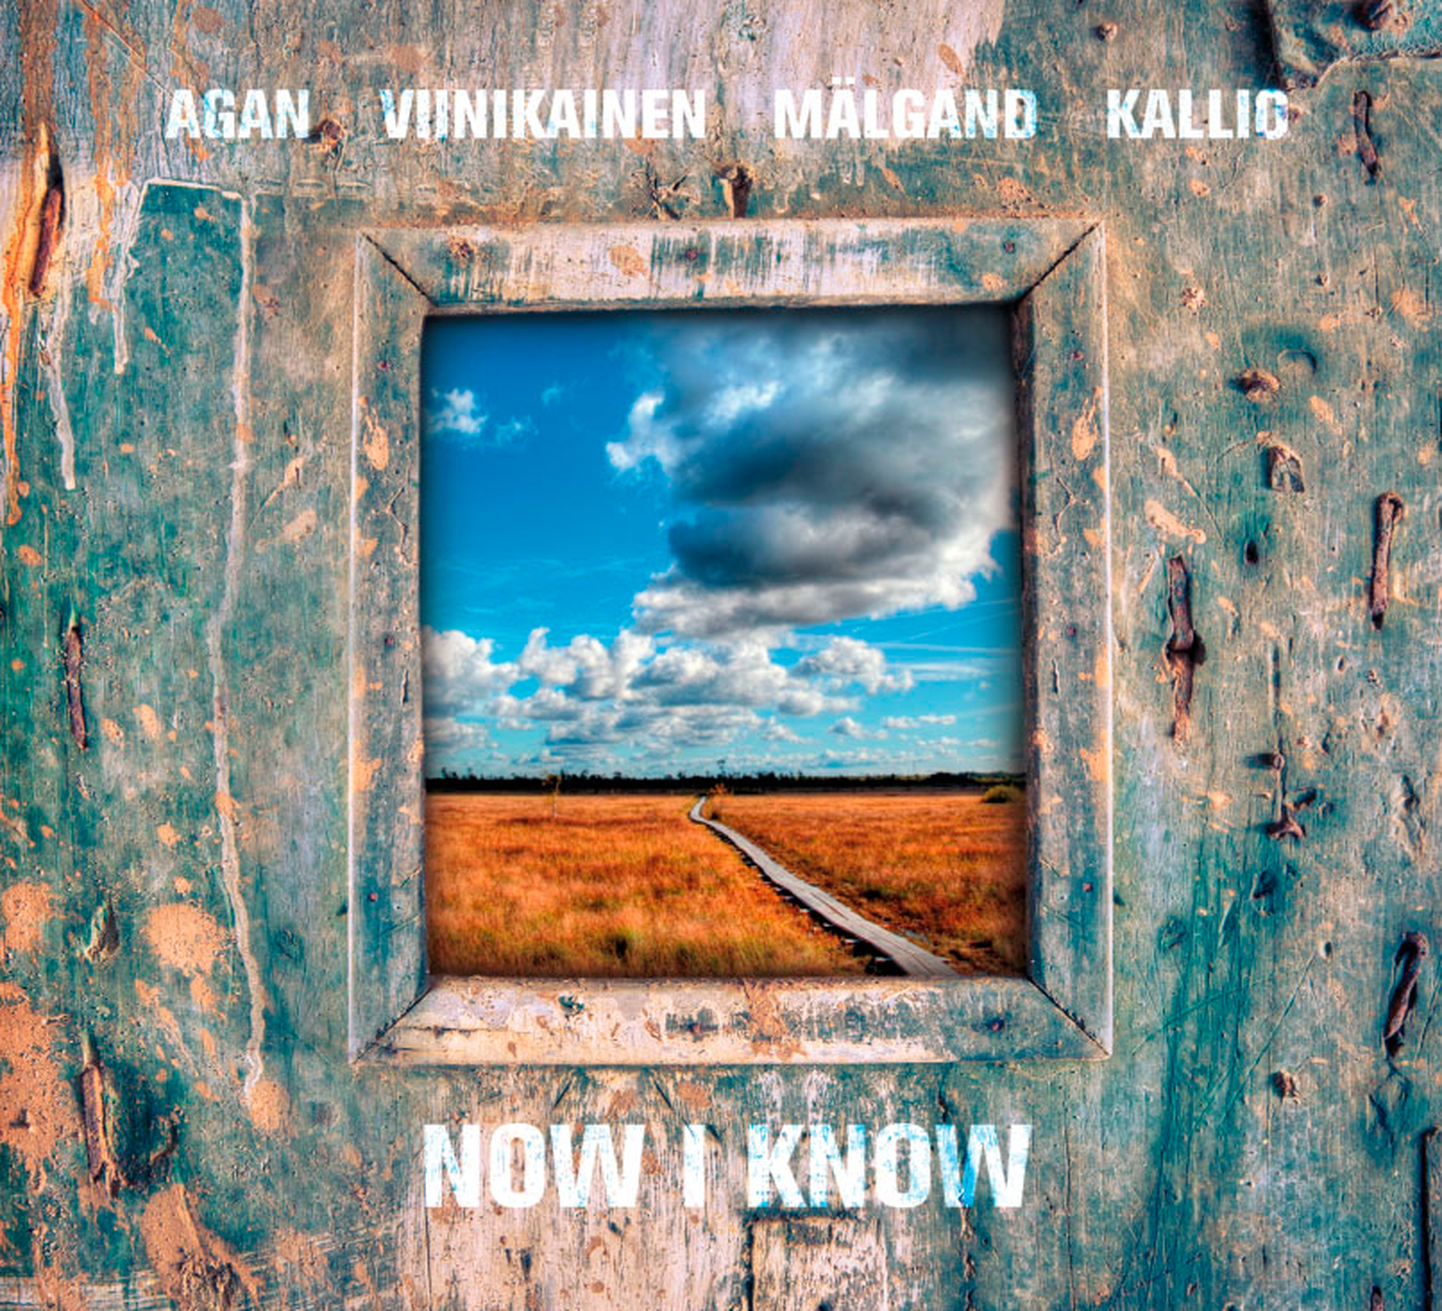 Agan / Viinikainen / Mälgand / Kallio -Now I Know